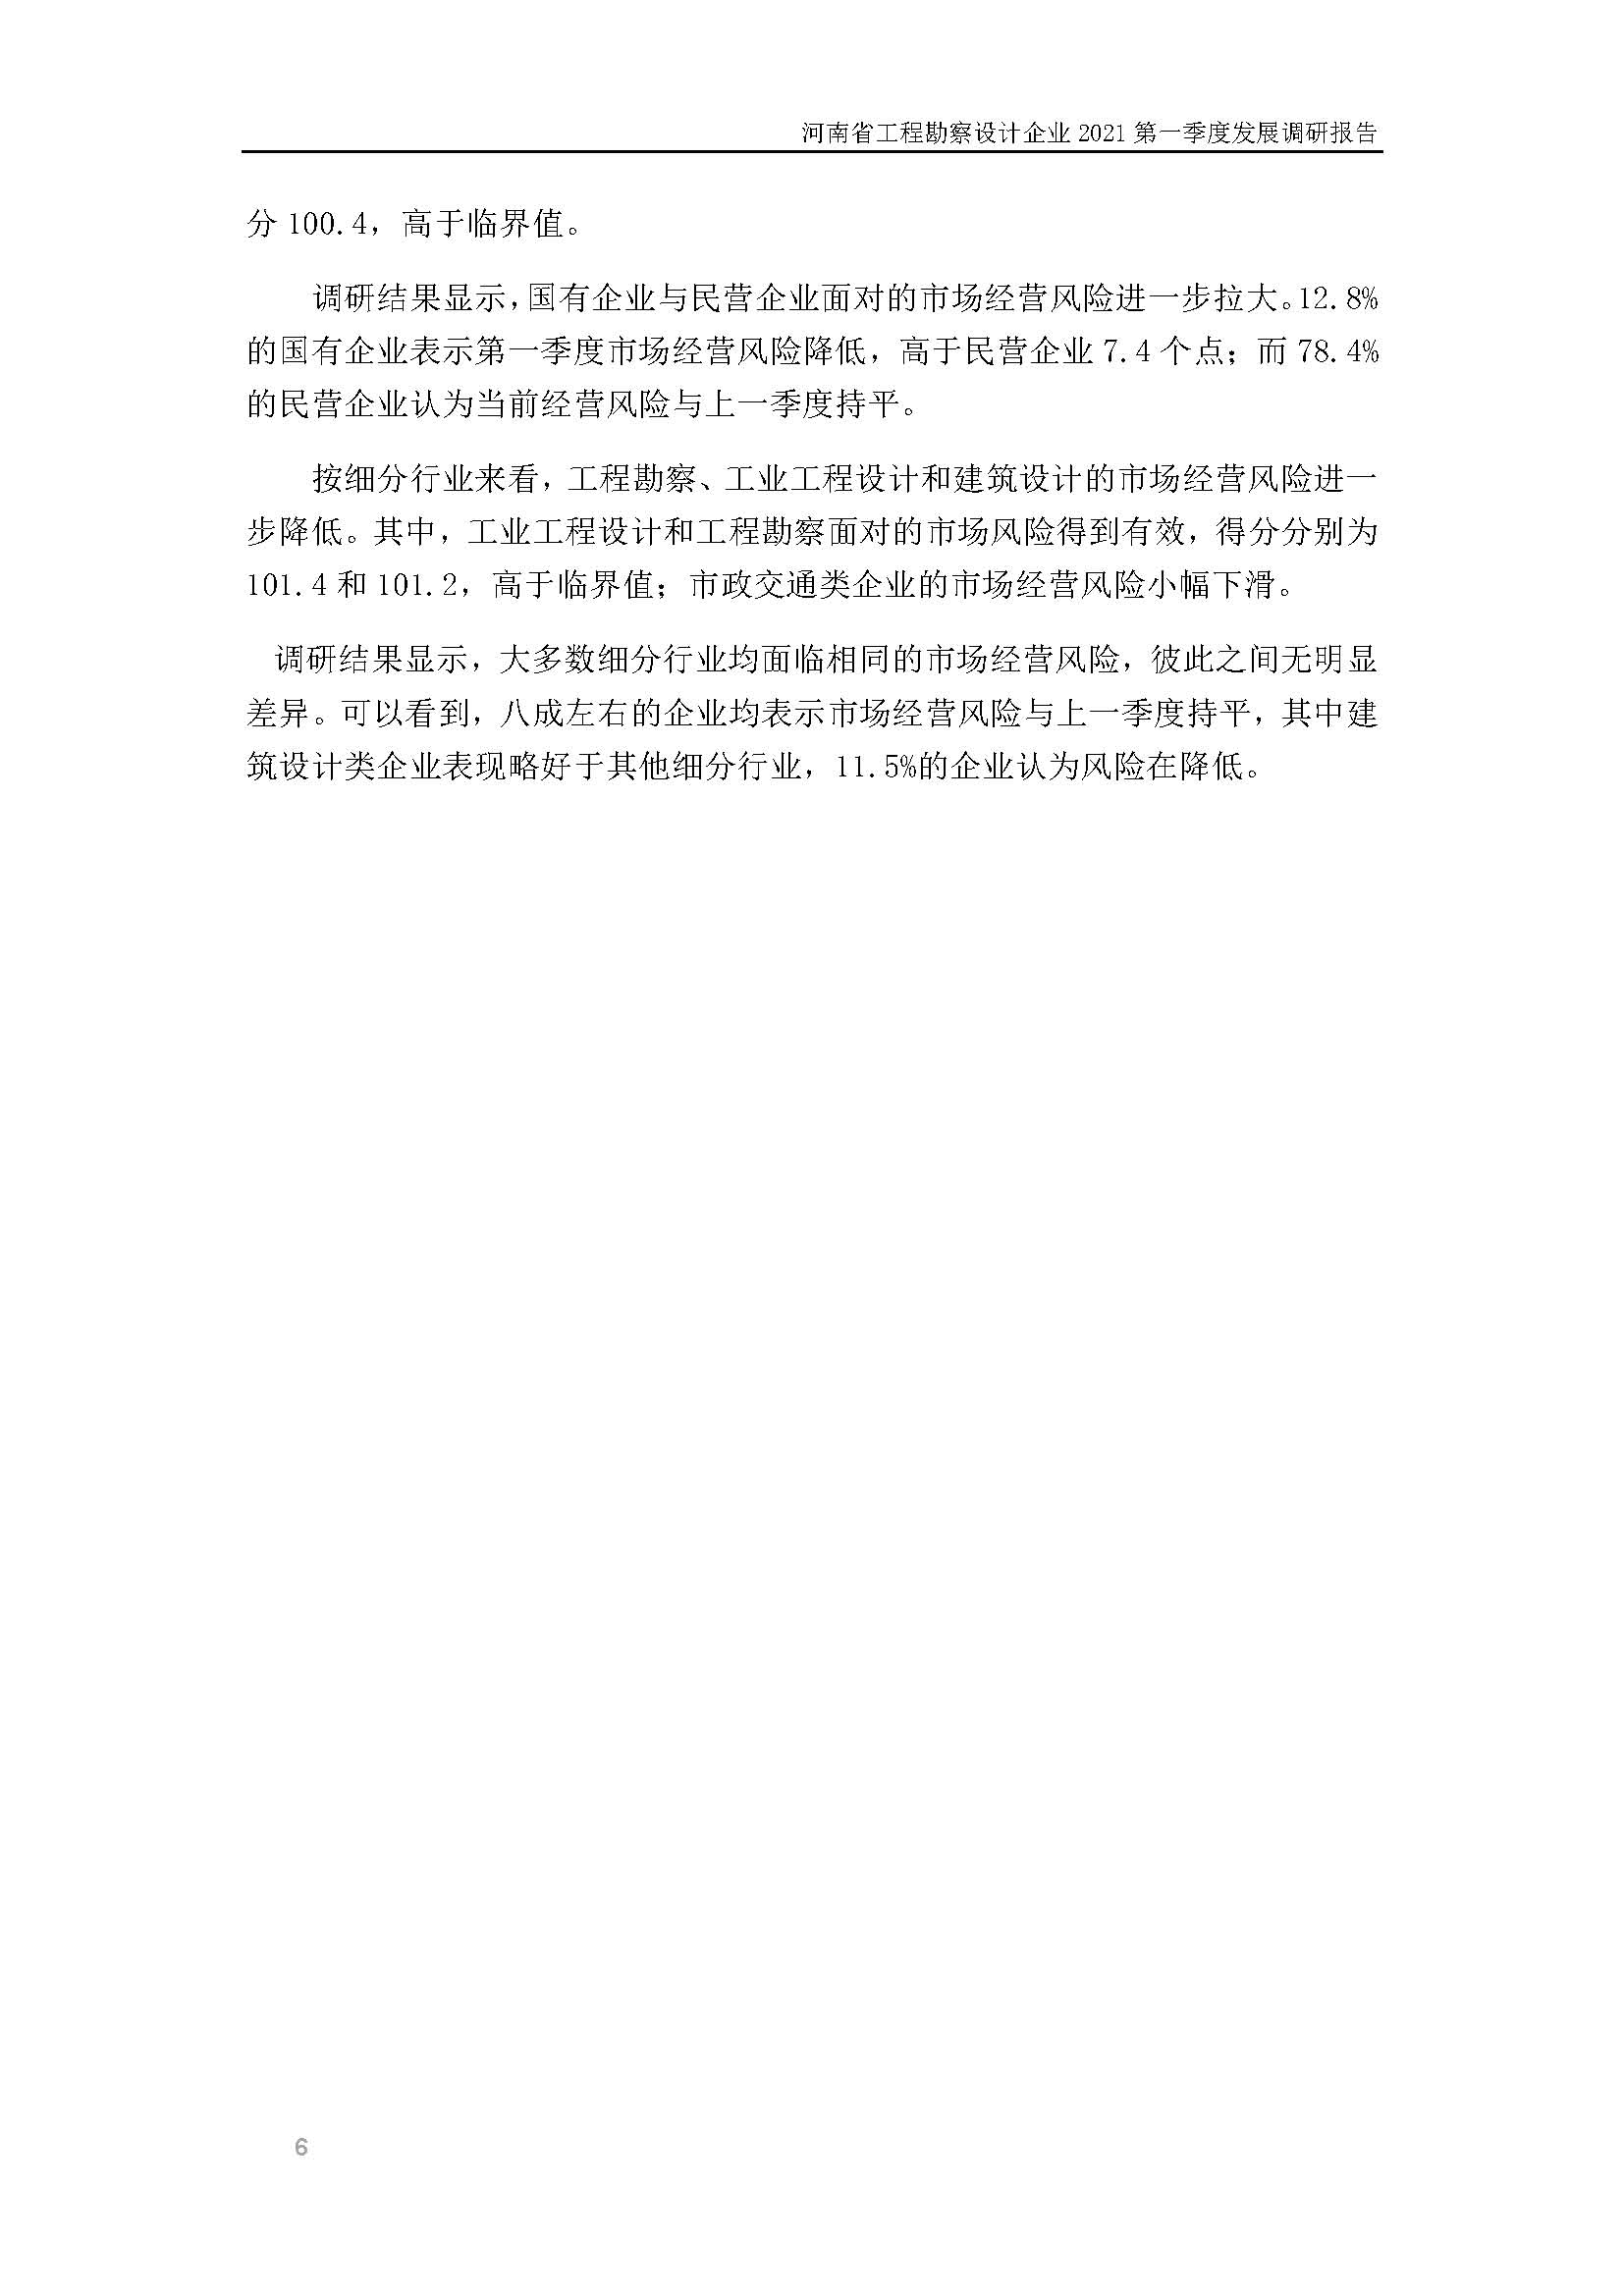 河南省工程勘察设计企业2021第一季度发展调研报告二_页面_7.jpg